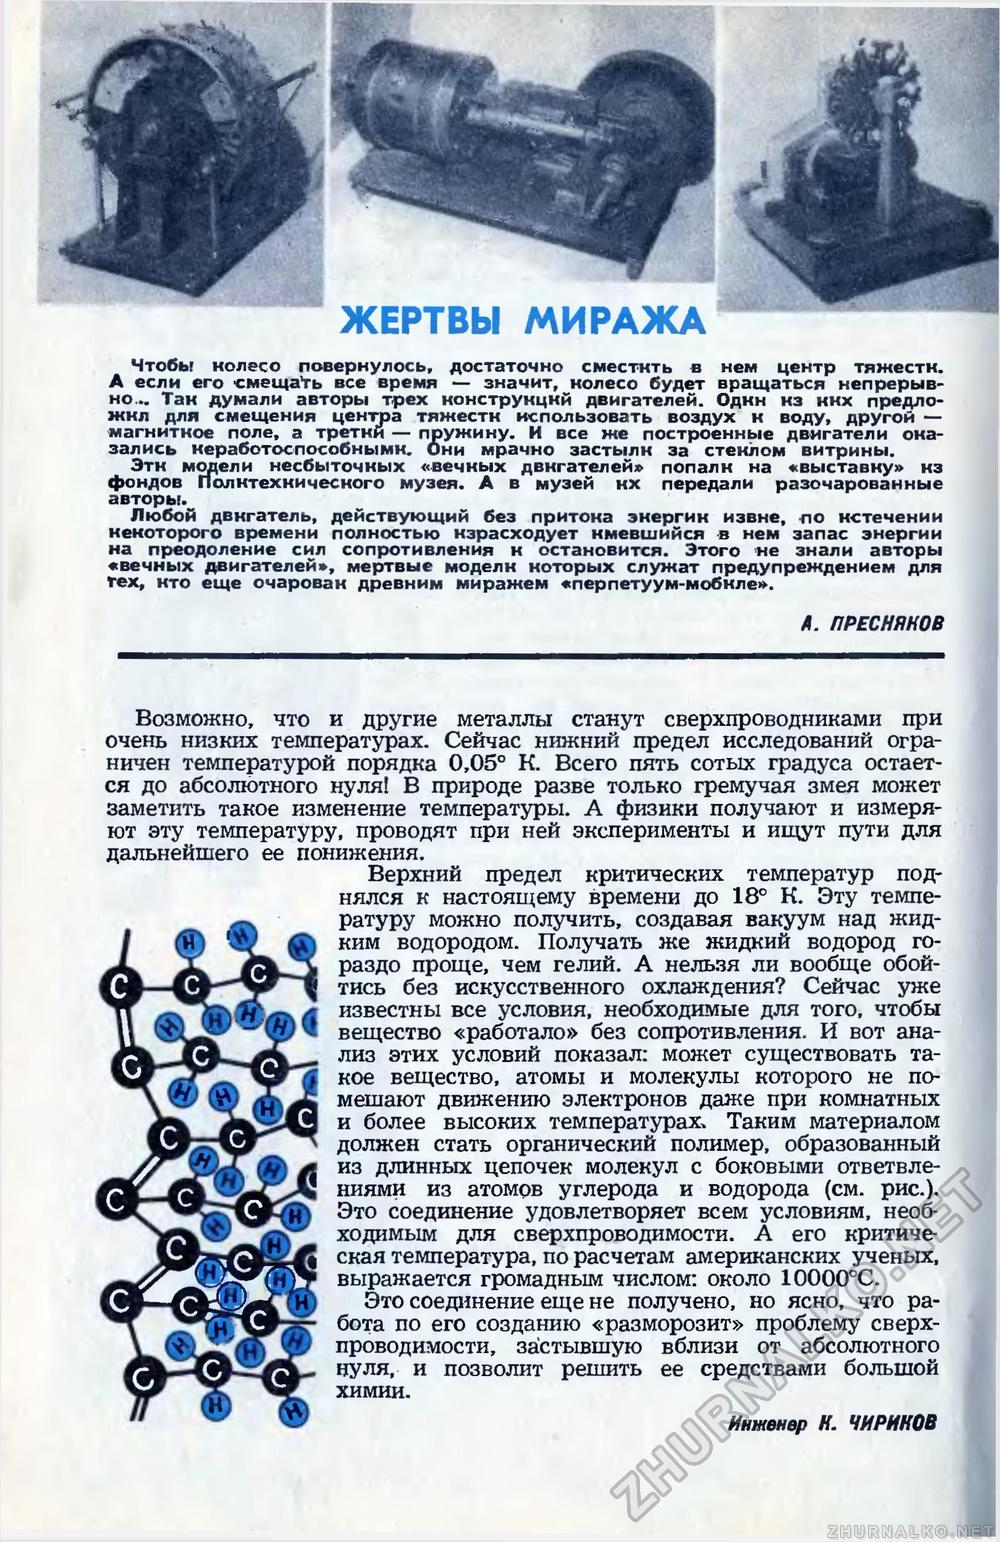   1965-03,  21